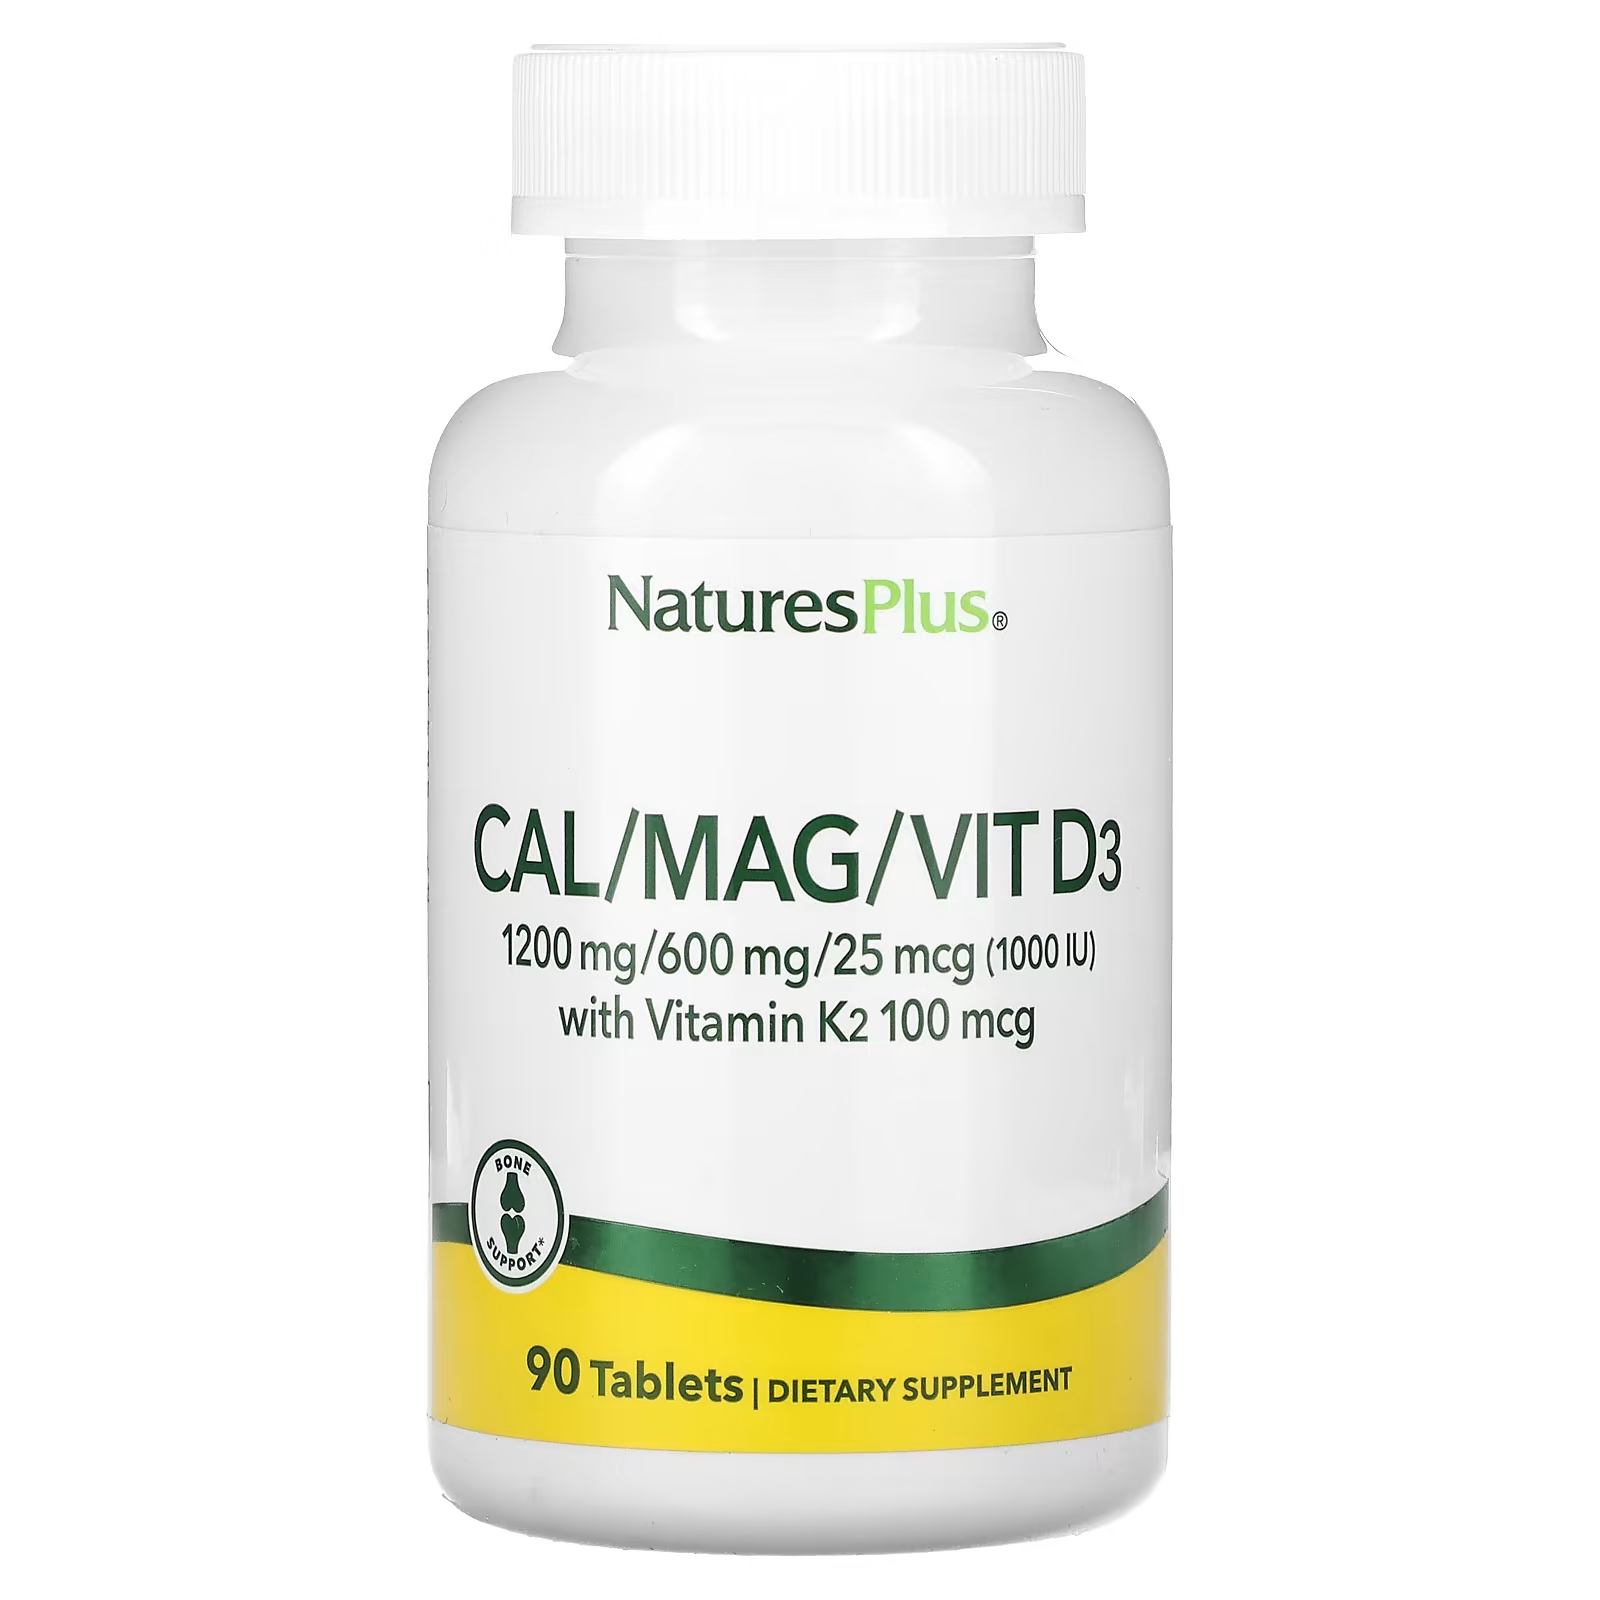 Пищевая добавка NaturesPlus Кальций-магний-витамин D3 с витамином K2, 90 таблеток